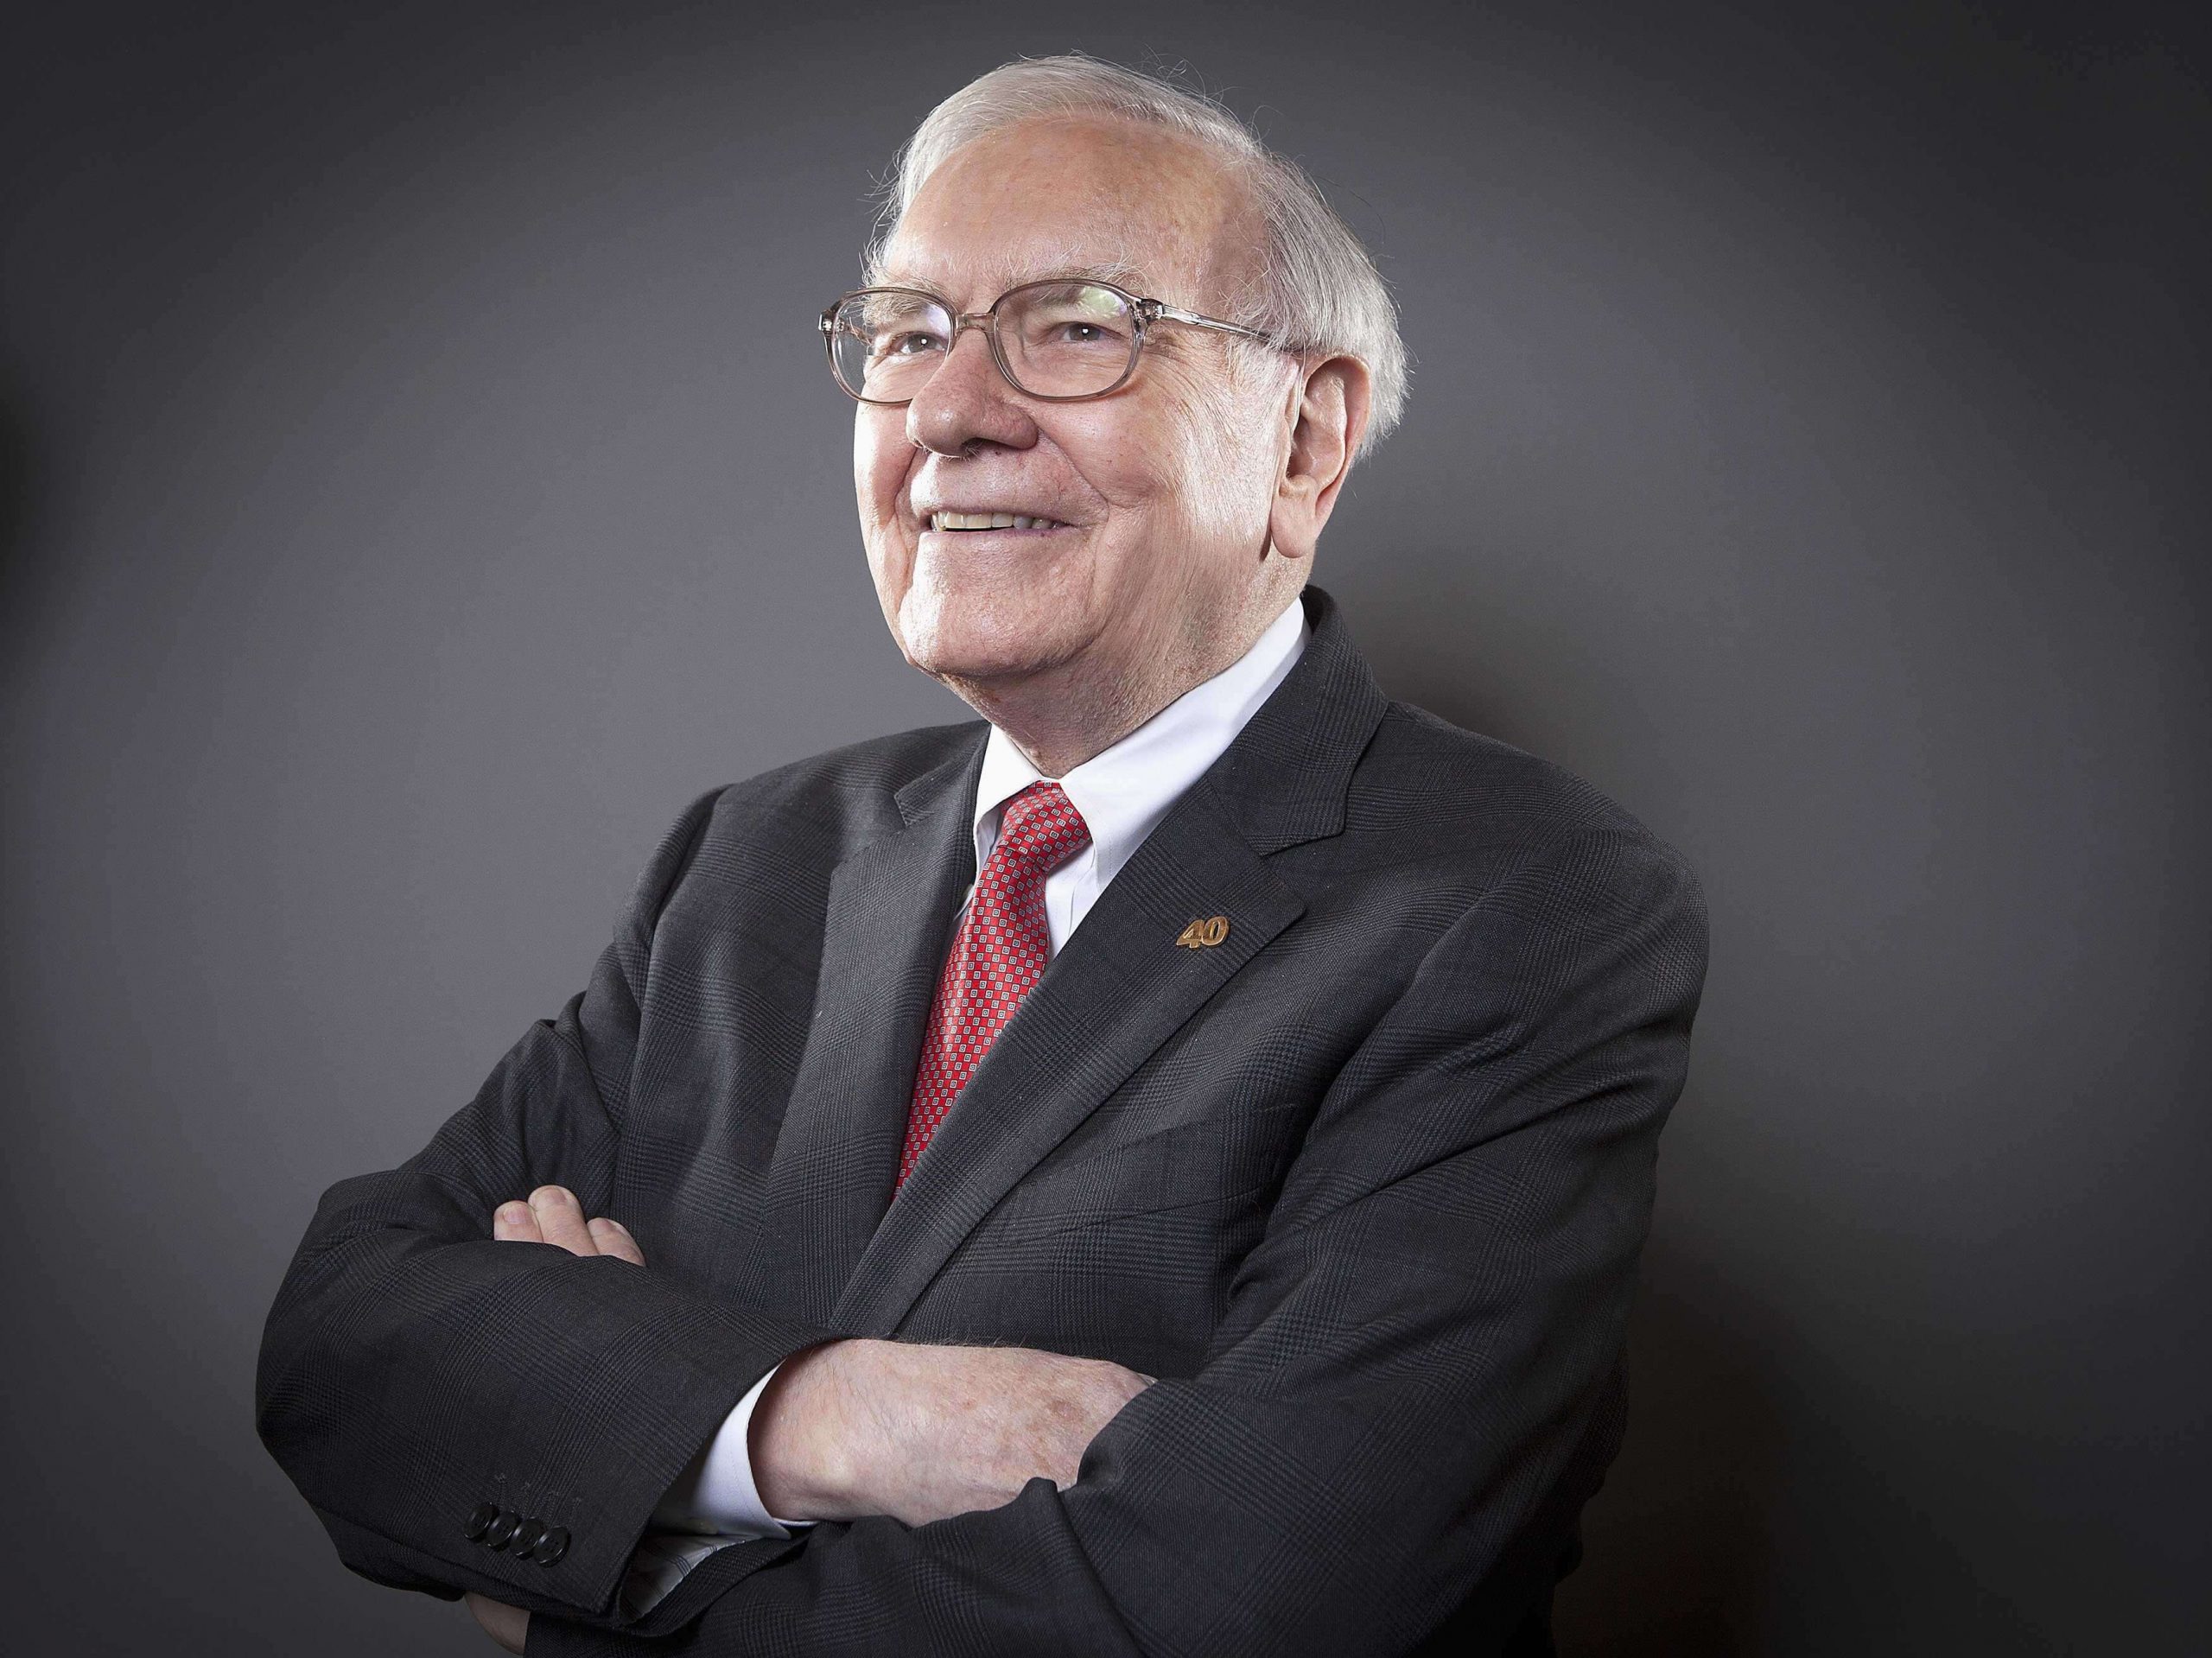 Warren Buffett Investment Strategies, Philosophy & Portfolio